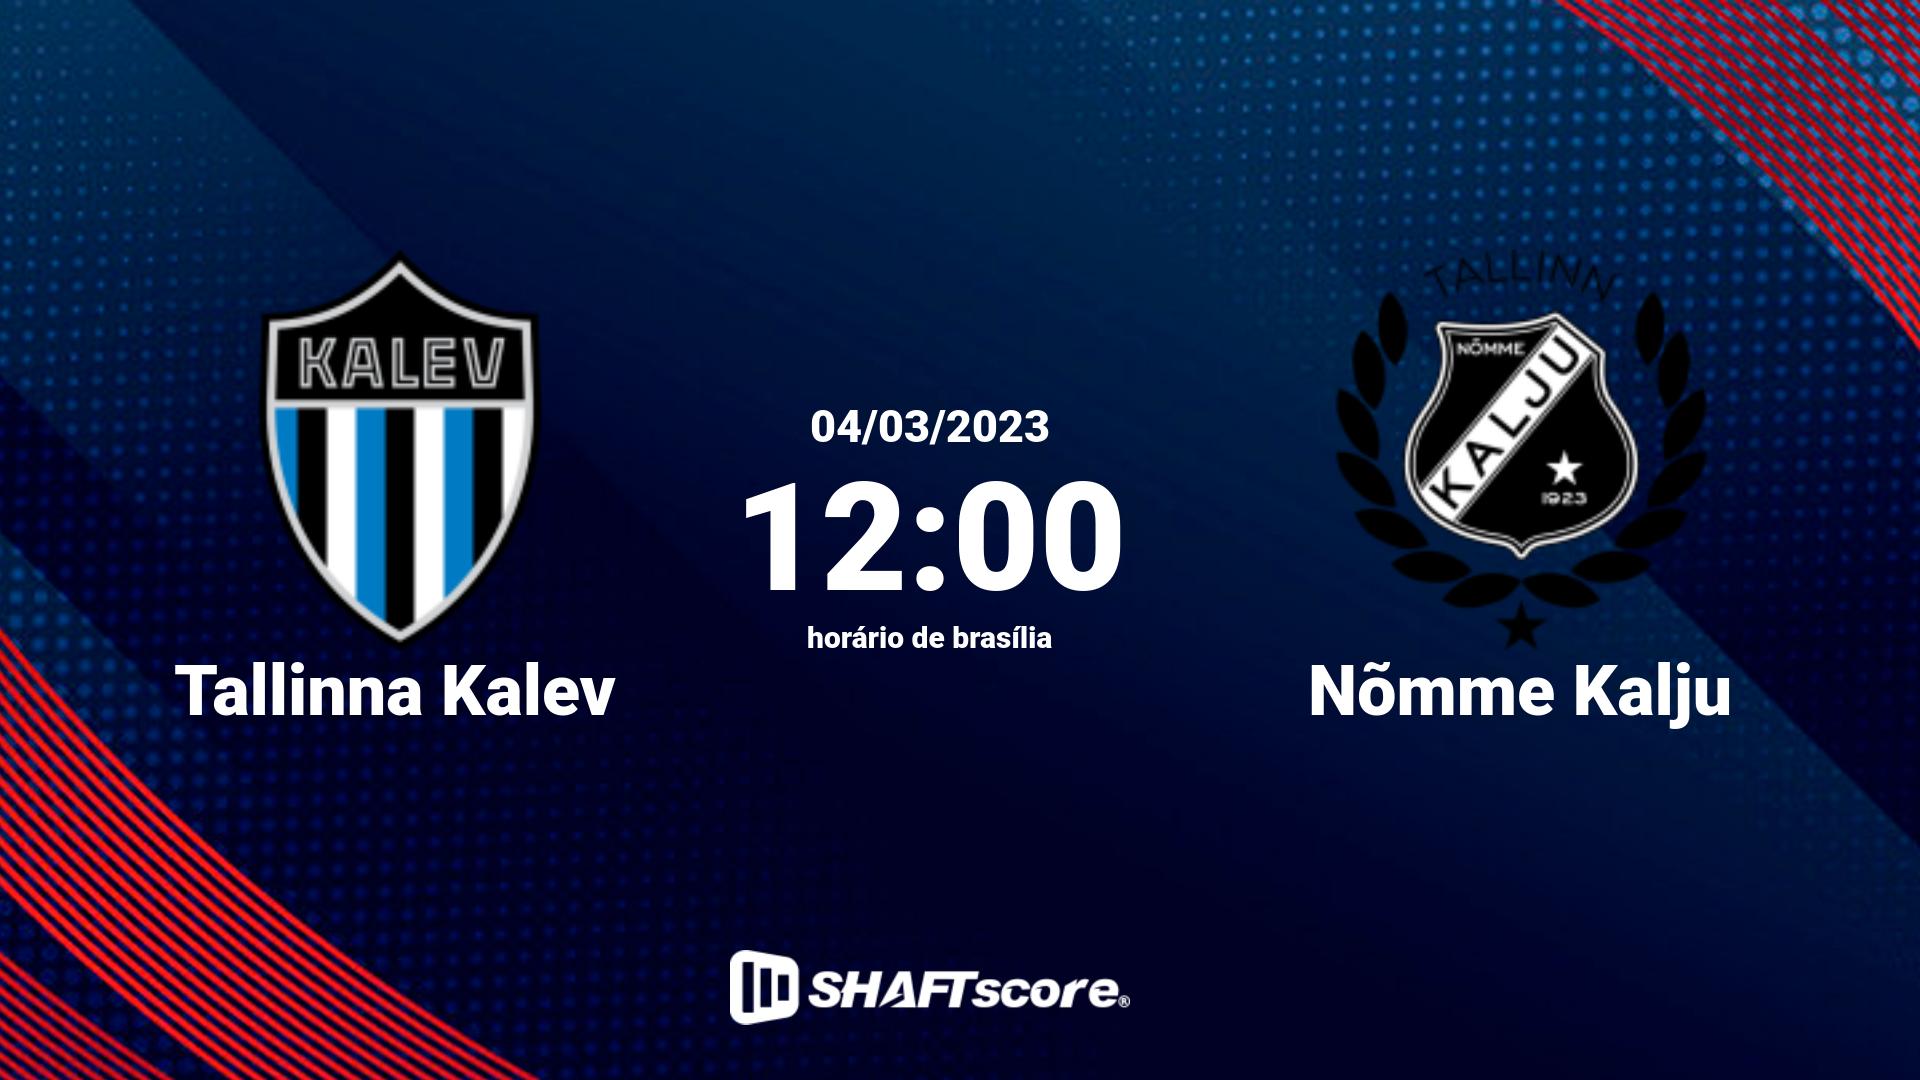 Estatísticas do jogo Tallinna Kalev vs Nõmme Kalju 04.03 12:00